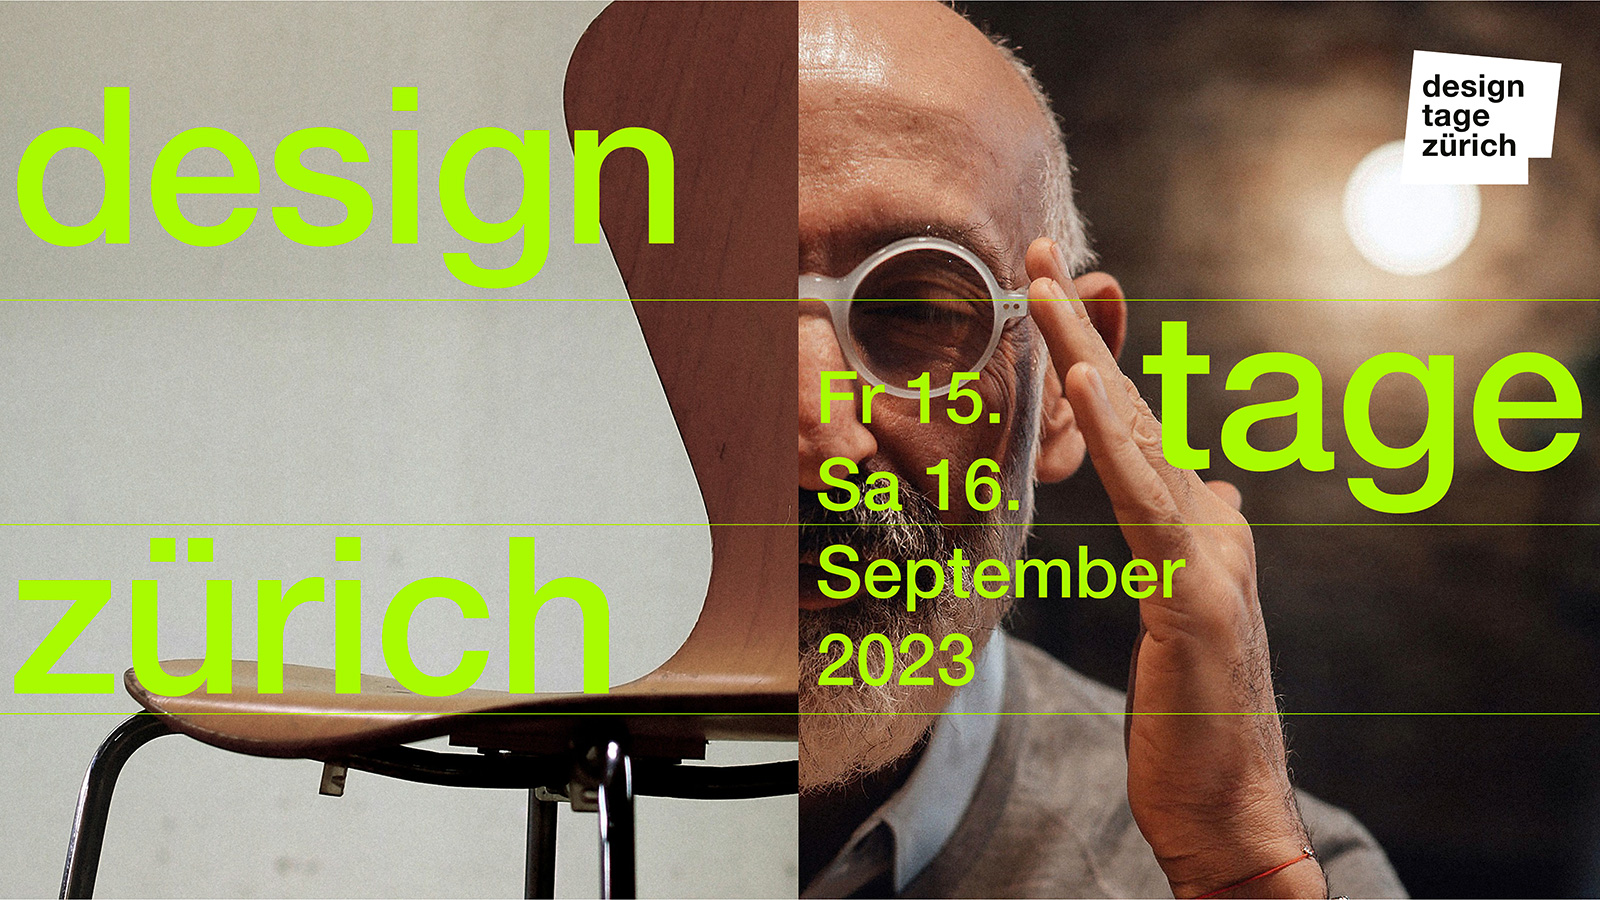 Zurich Design Tage 2023